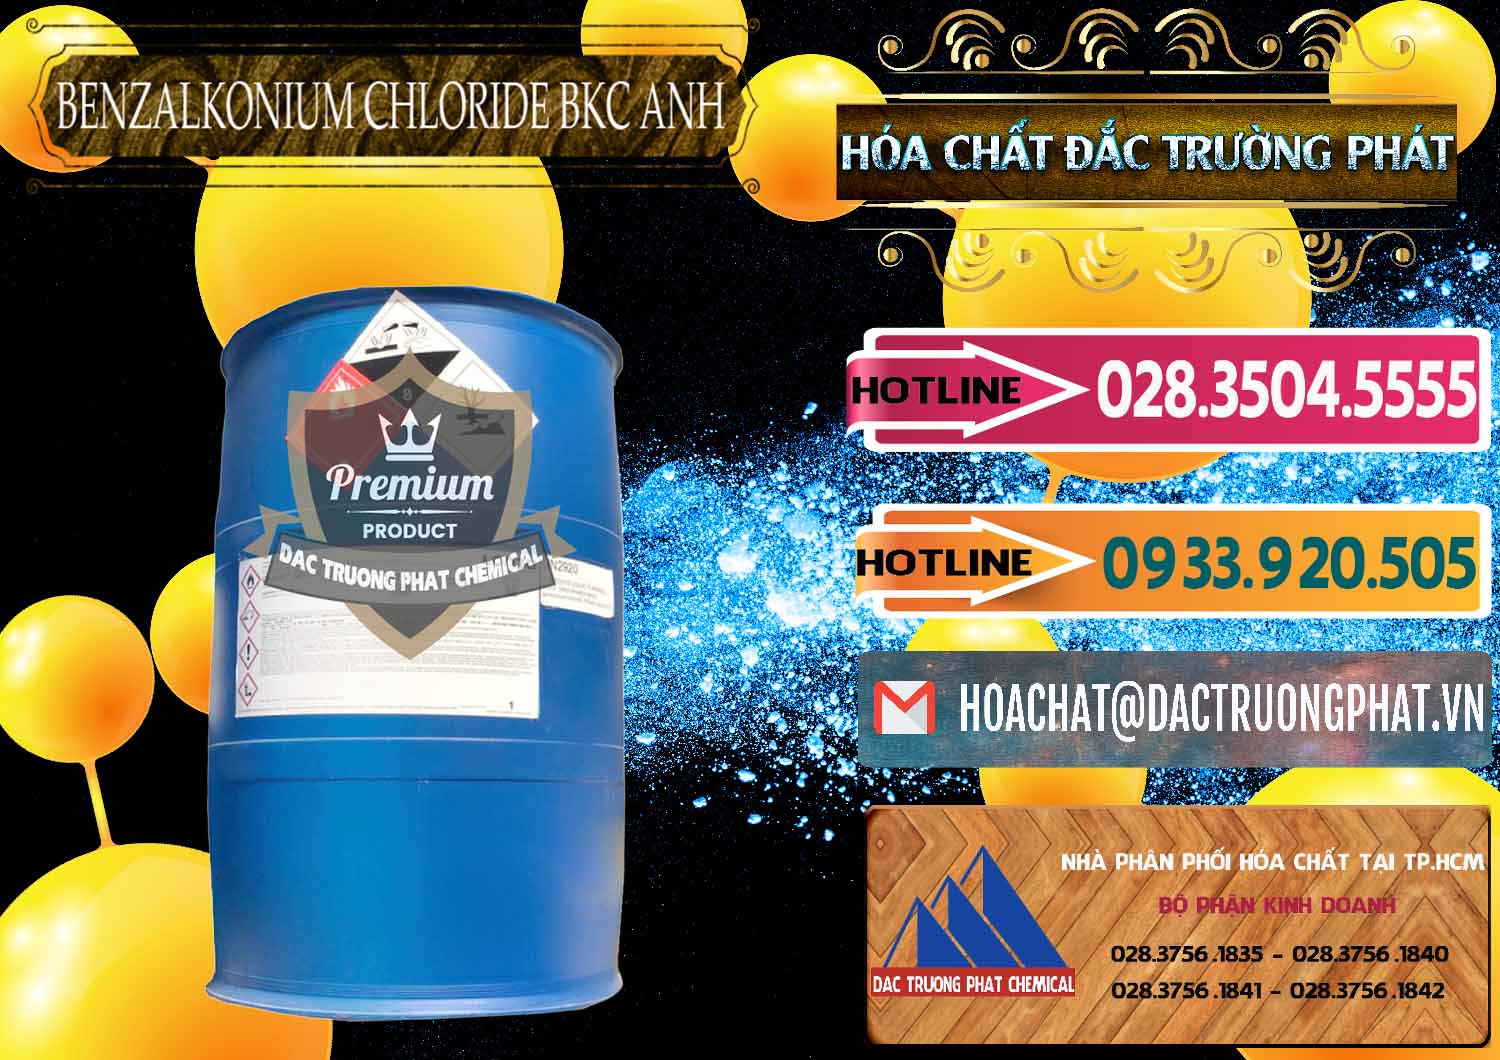 Cty chuyên nhập khẩu ( bán ) BKC - Benzalkonium Chloride 80% Anh Quốc Uk Kingdoms - 0457 - Đơn vị chuyên kinh doanh - cung cấp hóa chất tại TP.HCM - dactruongphat.vn